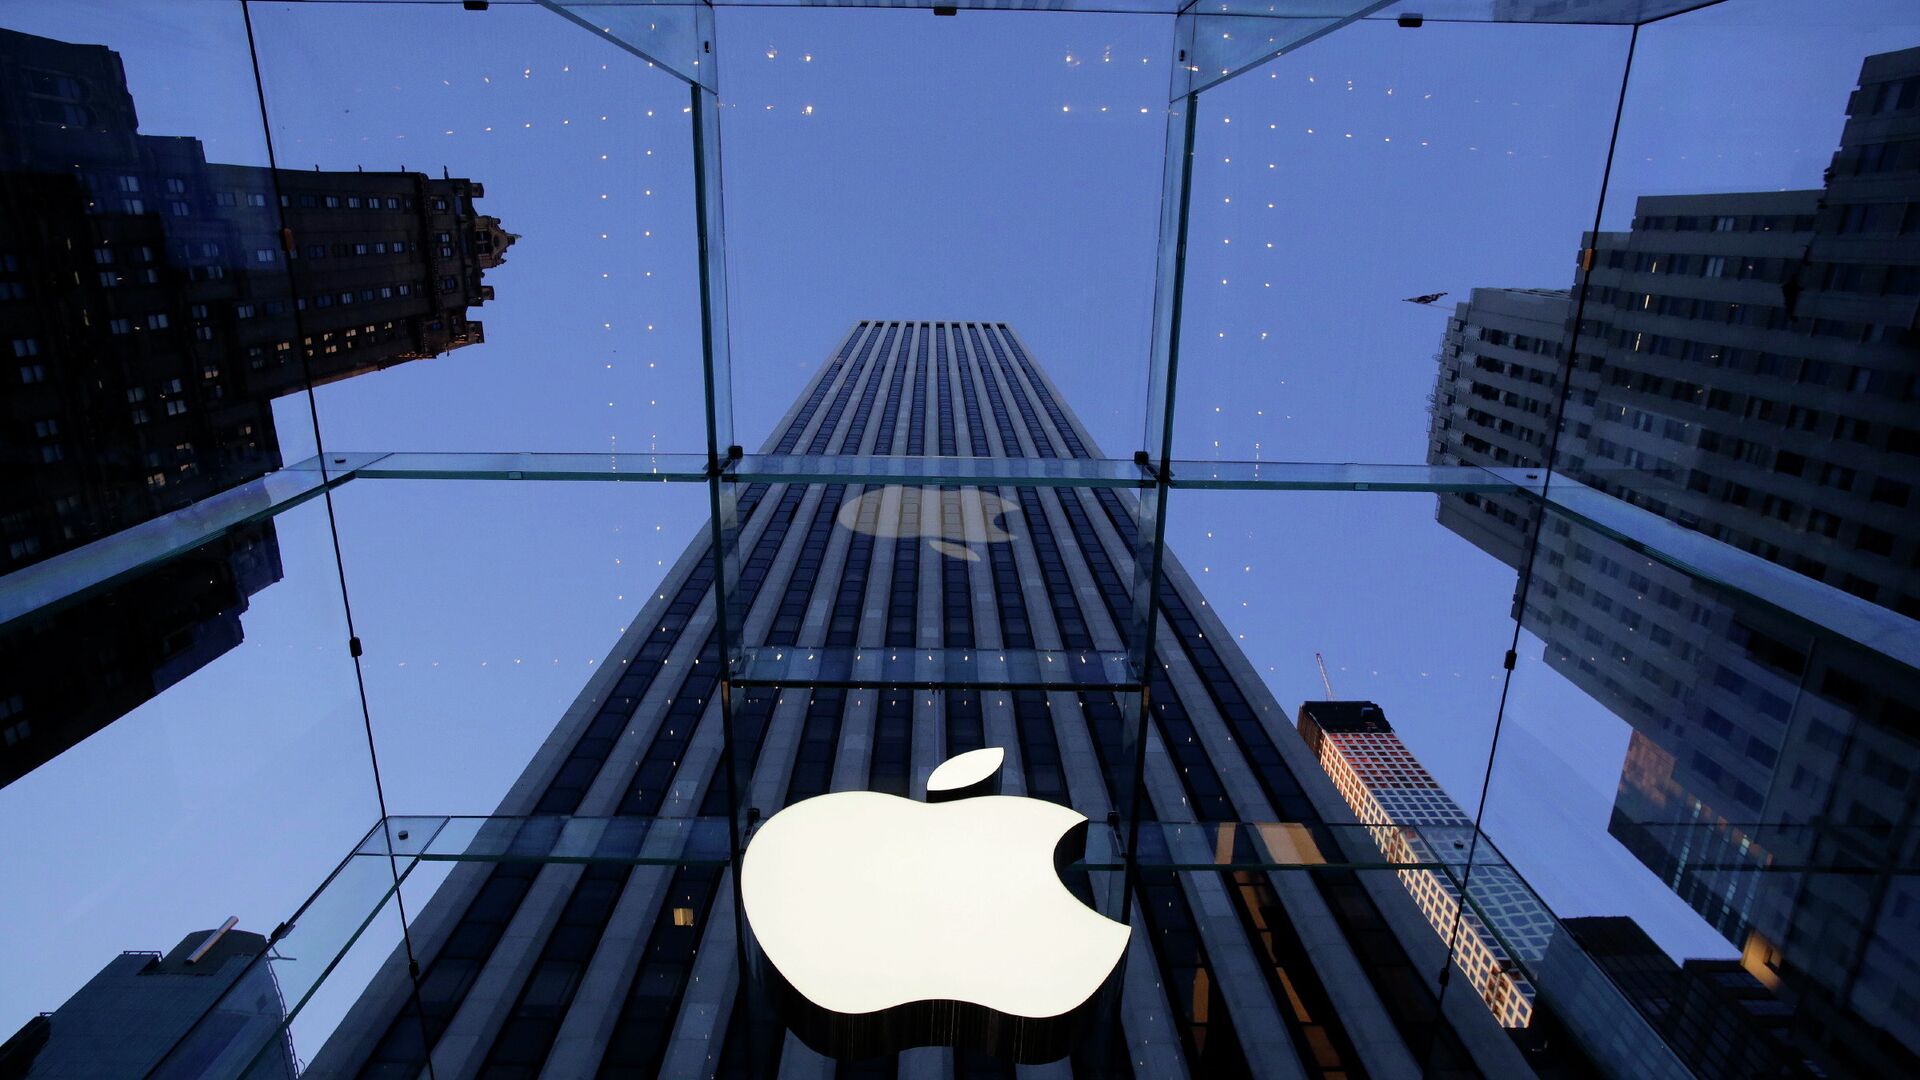 Логотип компании Apple над входом в здание в Нью-Йорке, США - РИА Новости, 1920, 29.12.2021